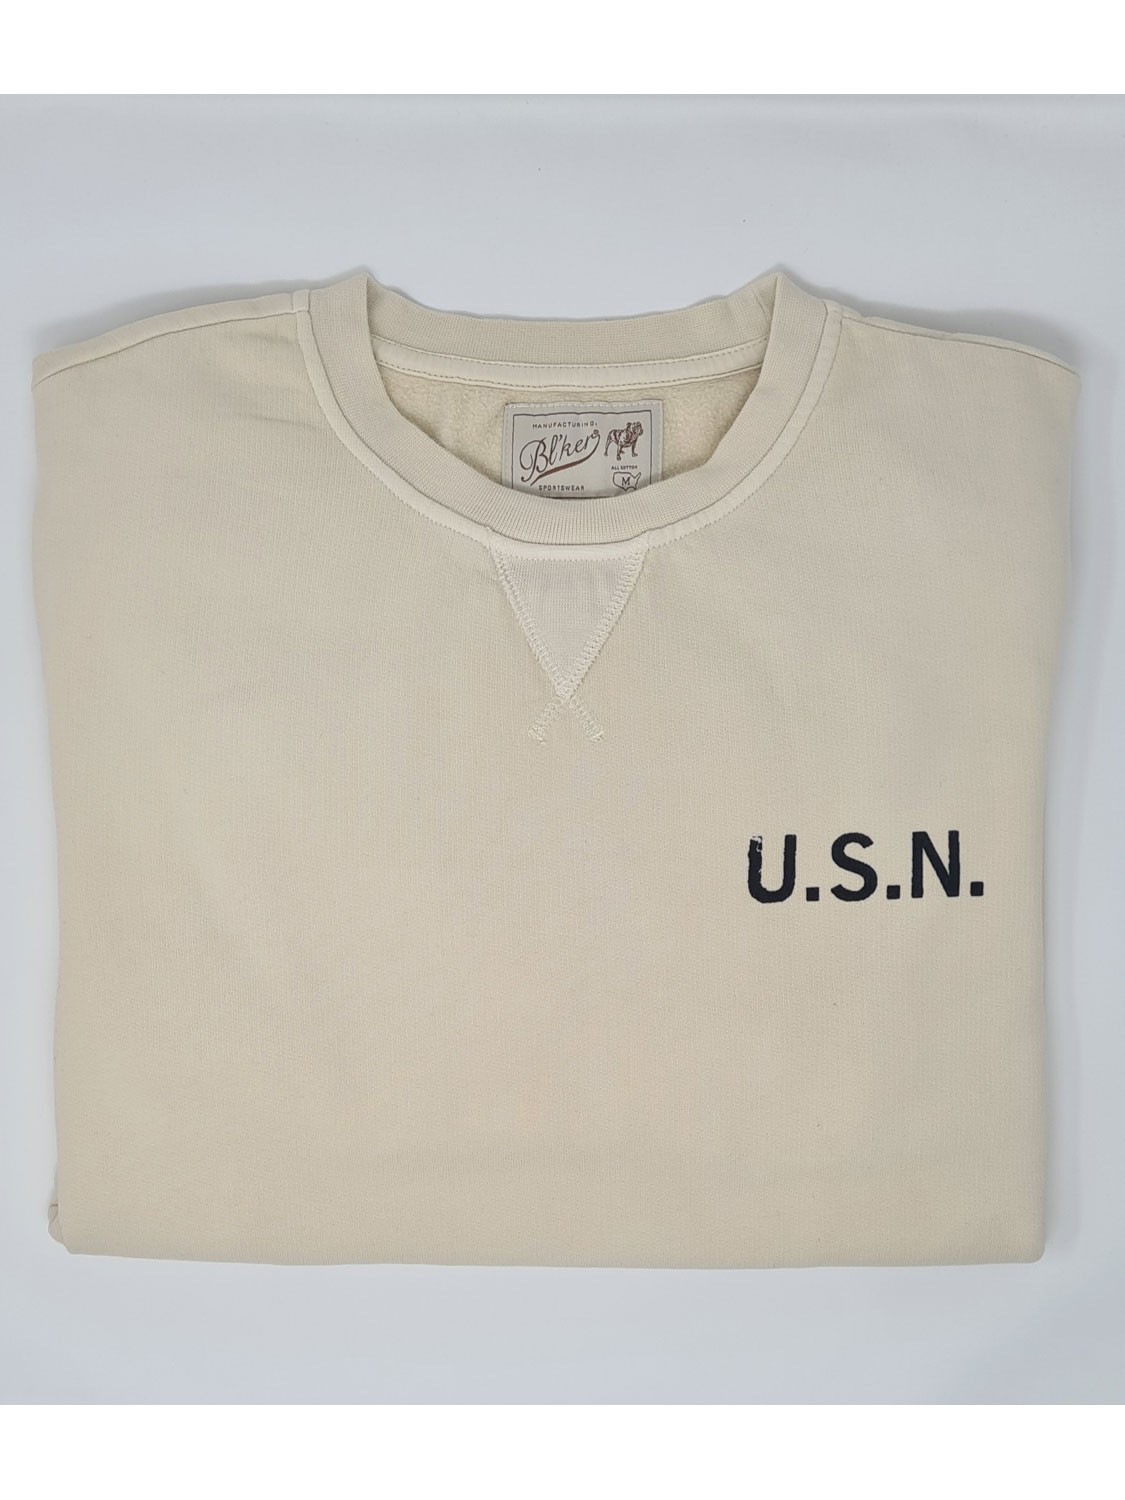 Bl'ker Men's Sweatshirt Graphic U.S.N.